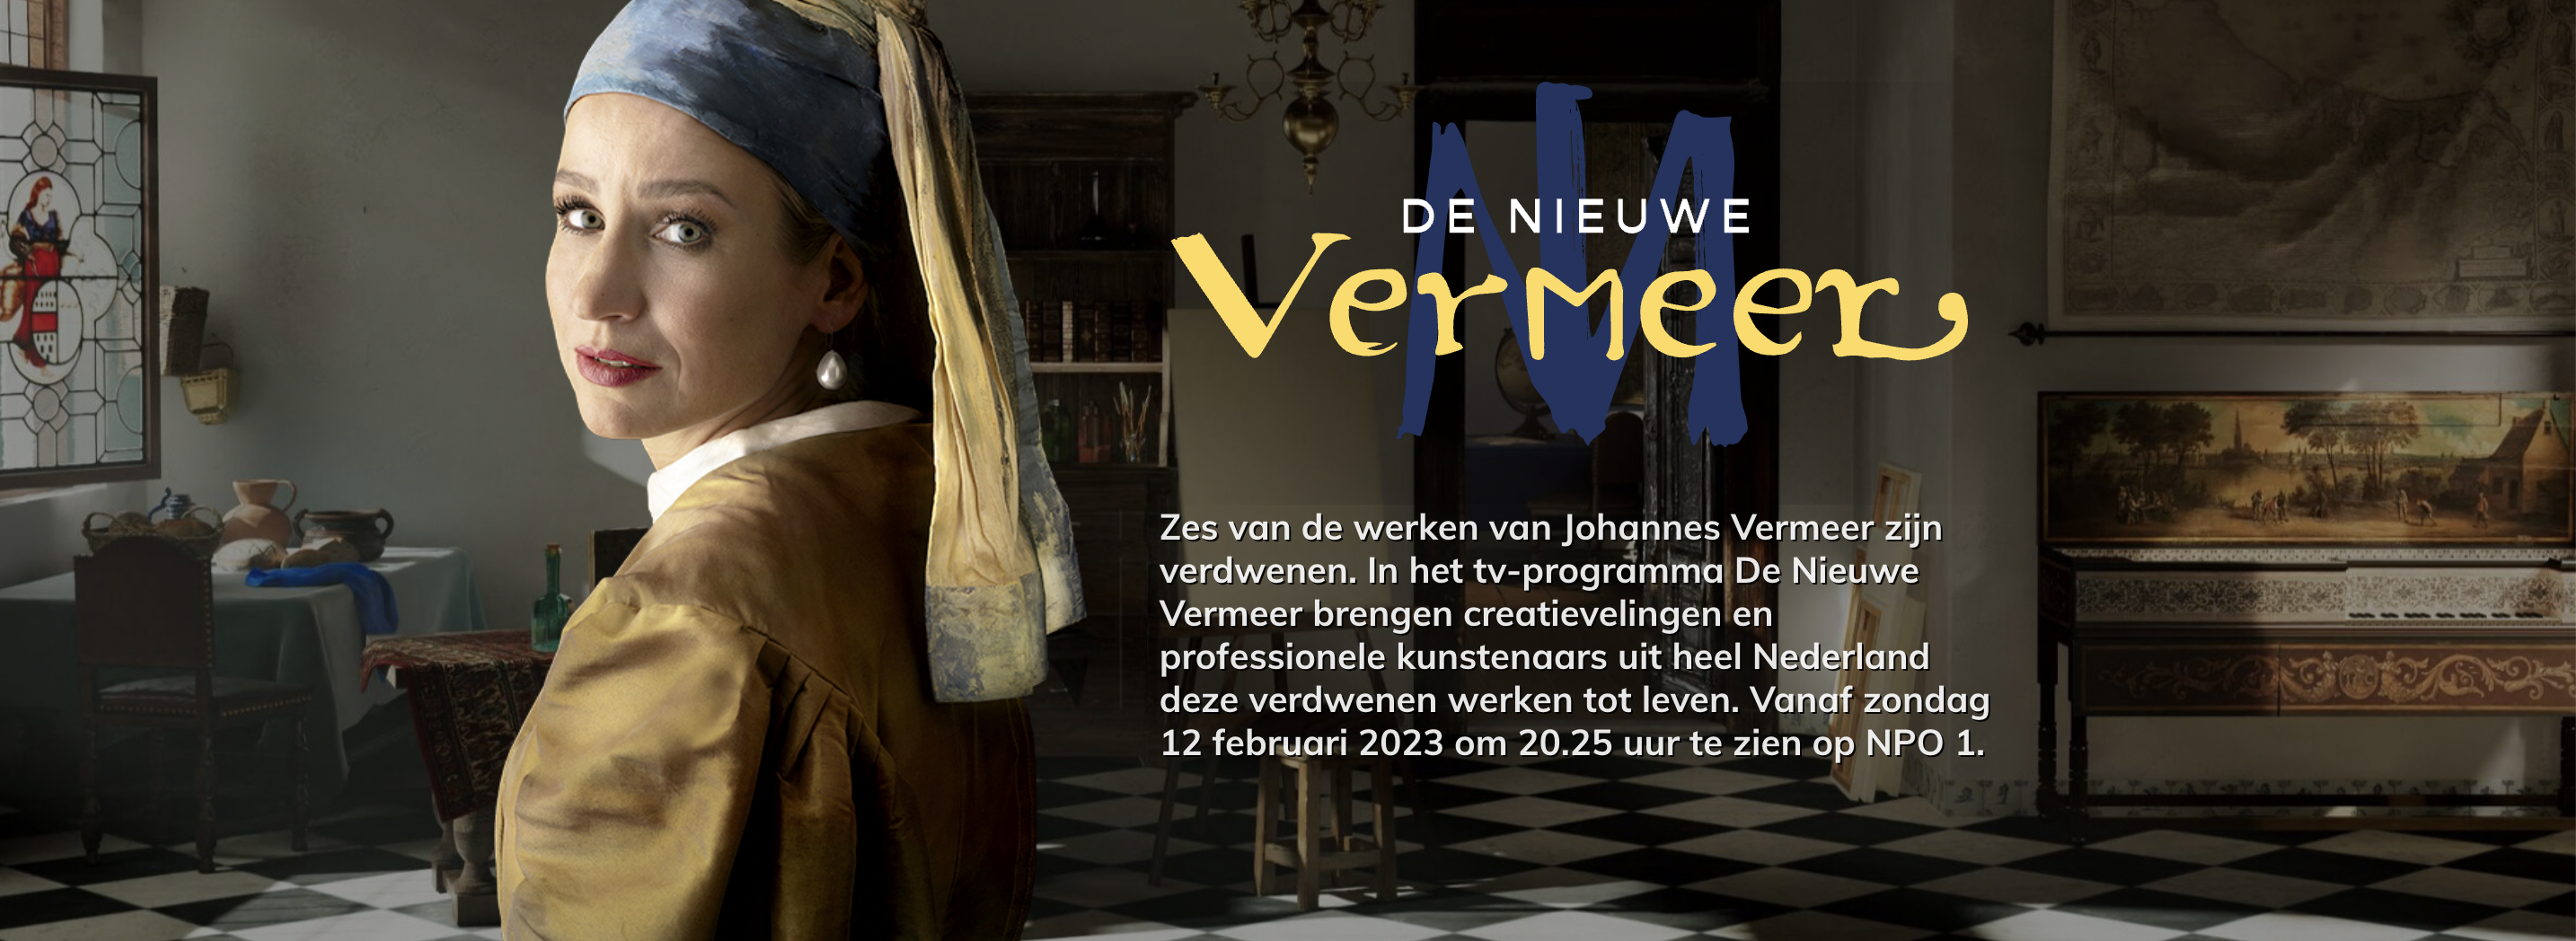 Edwin IJpeij De Nieuwe Vermeer